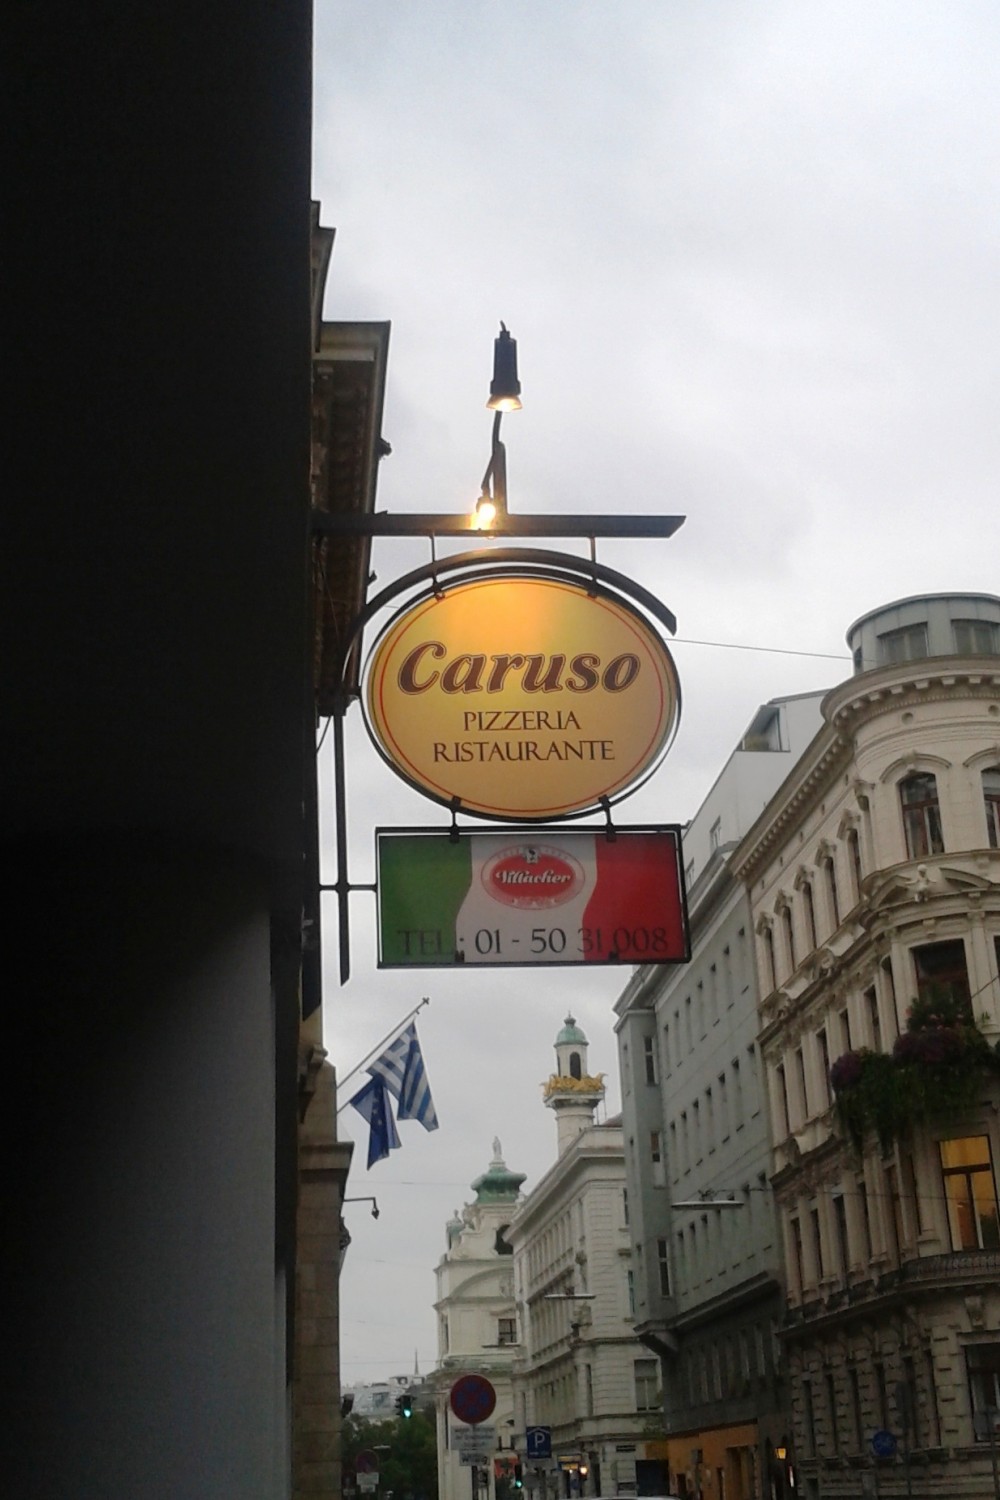 Pizzeria Caruso Lokalaußenreklame - Pizzeria Caruso - Wien